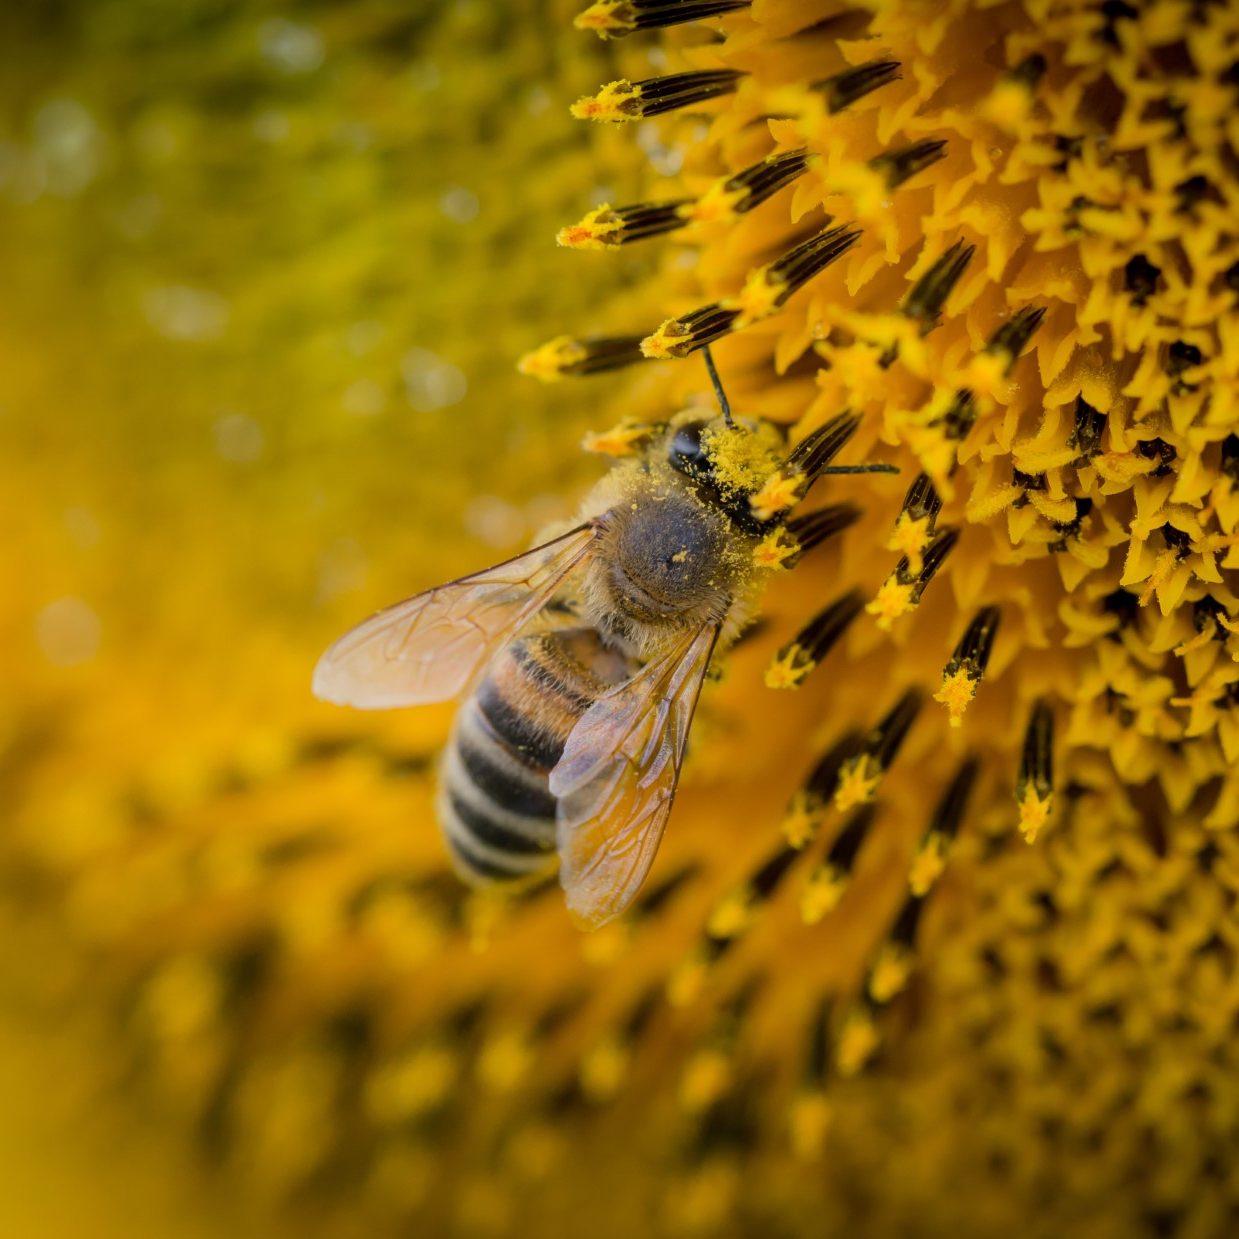 honingbij haalt nectar uit zonnebloem